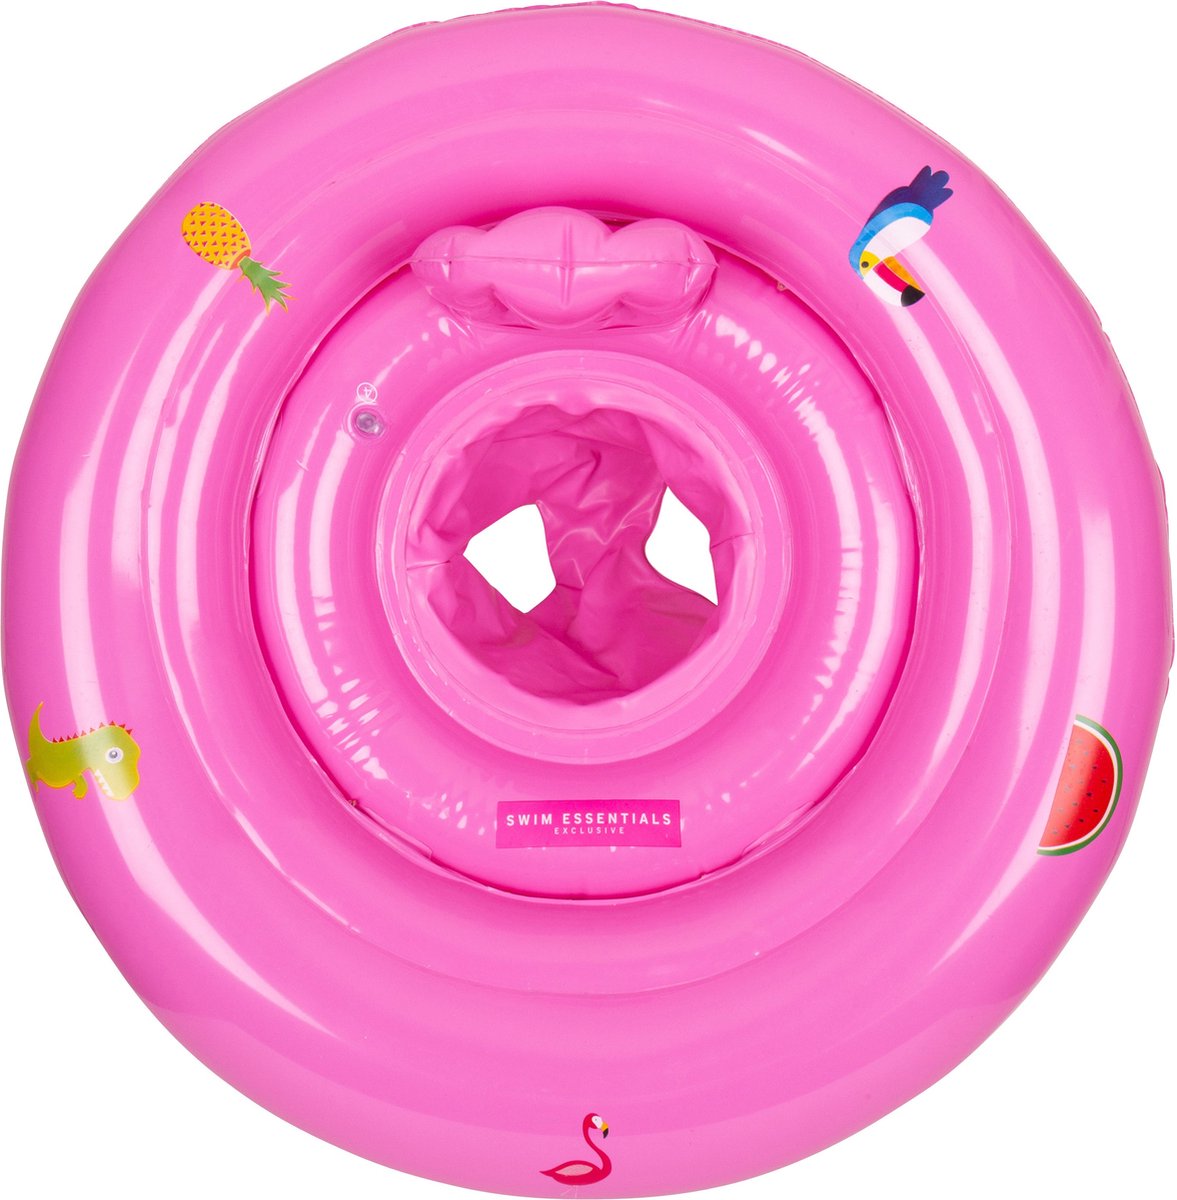 Swim Essentials Baby Zwemband Roze - Baby Float & Zwemzitje - 0-1 jaar